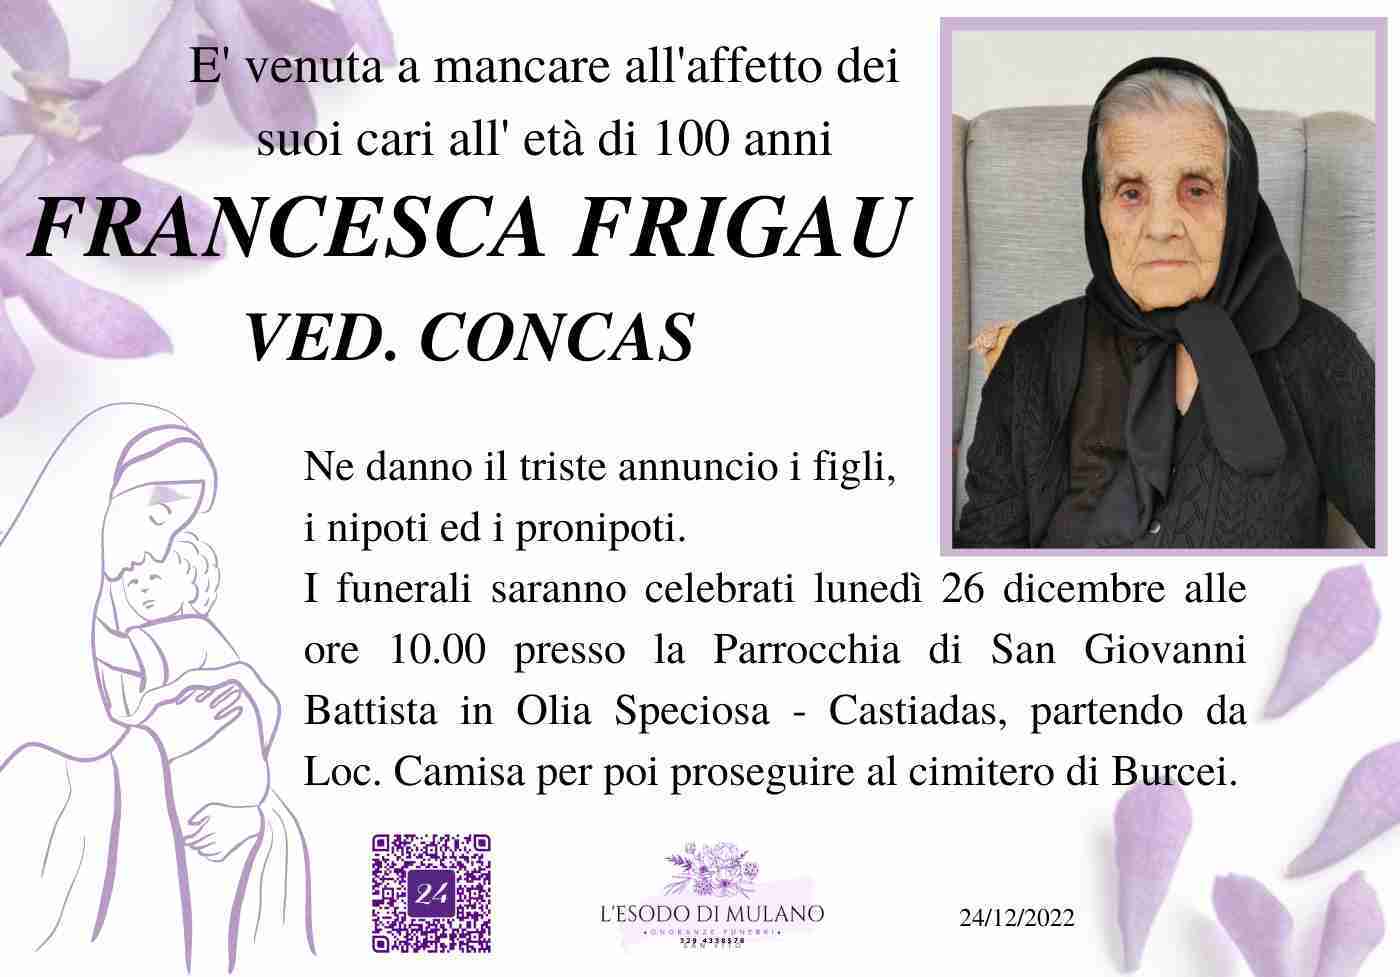 Francesca Frigau